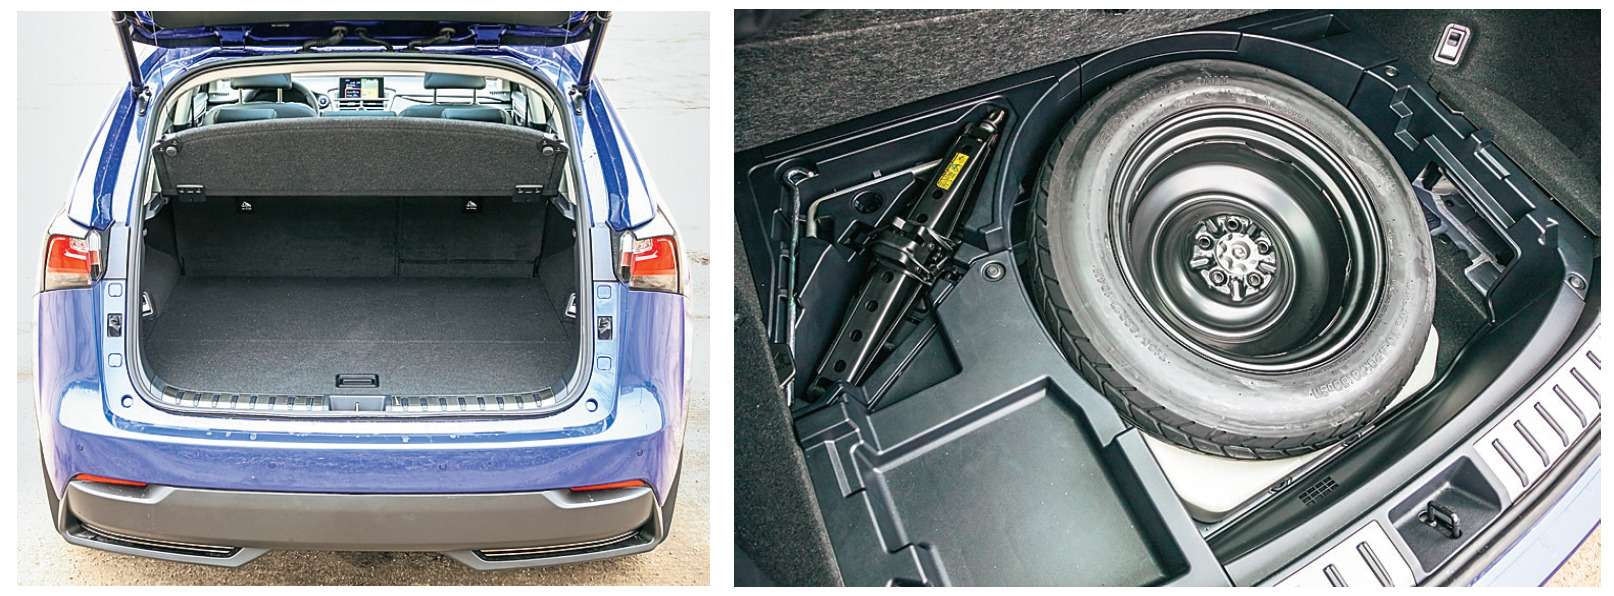 Lexus NX 300h. Объем багажника по меркам класса скромный – 336 литров (по результатам наших замеров). Под полом – докатка и домкрат.